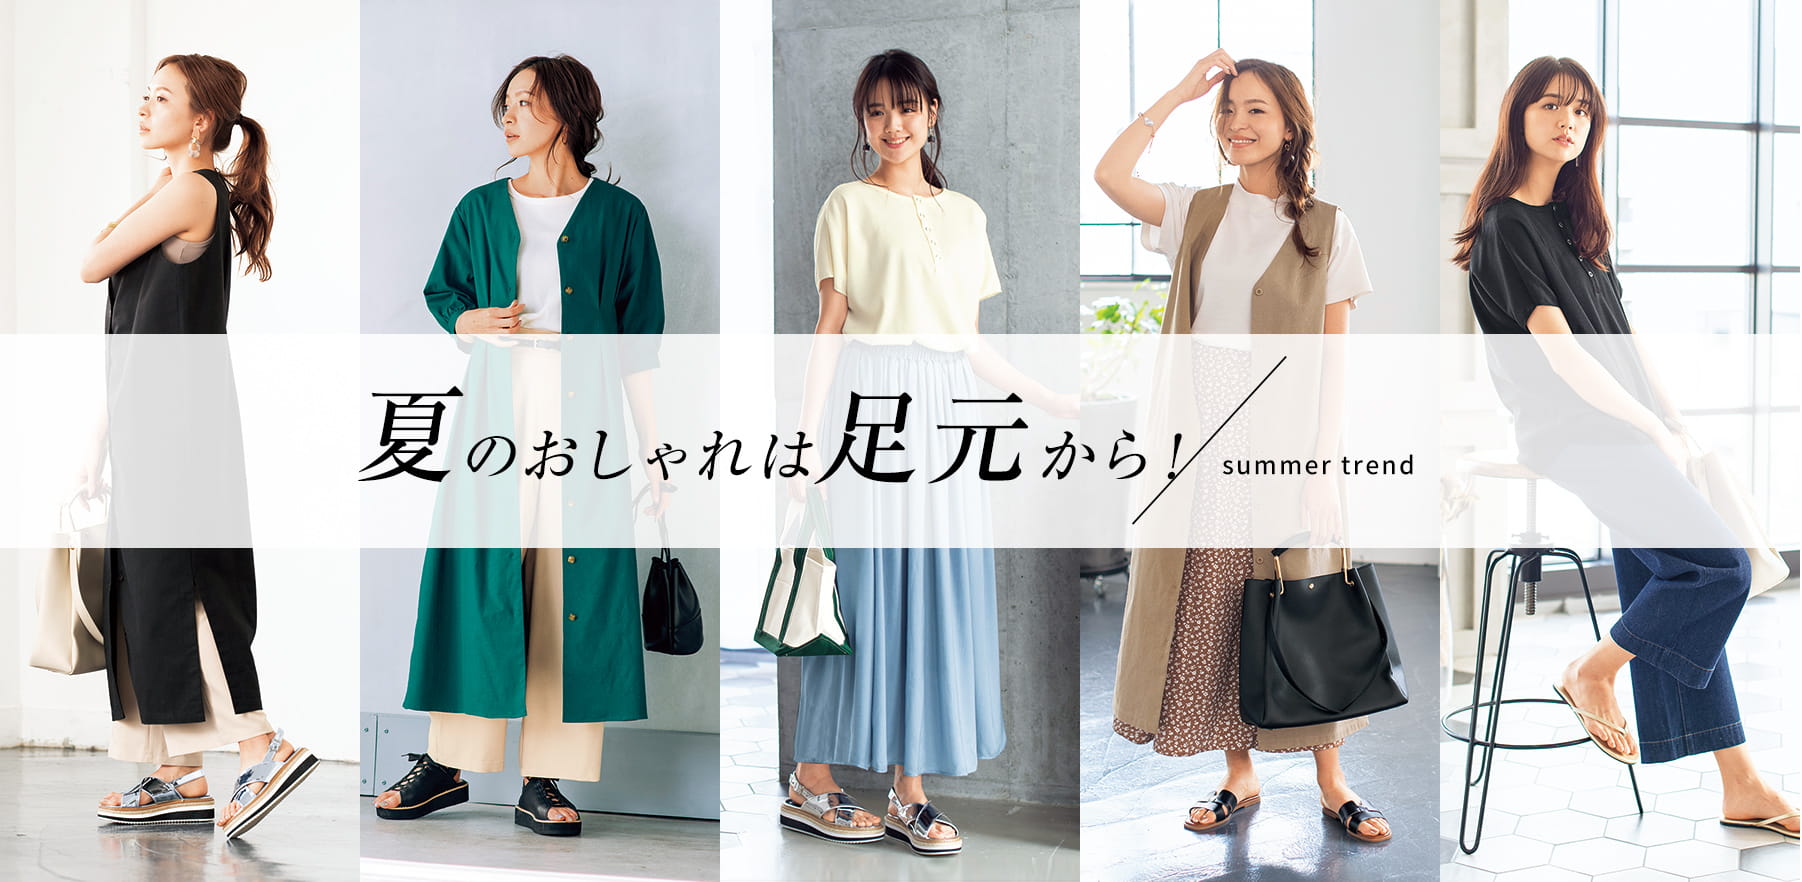 夏のおしゃれは足元から 夏コーデ特集 レディース ヒラキ 激安靴の通販 ヒラキ公式サイト Hiraki Shopping